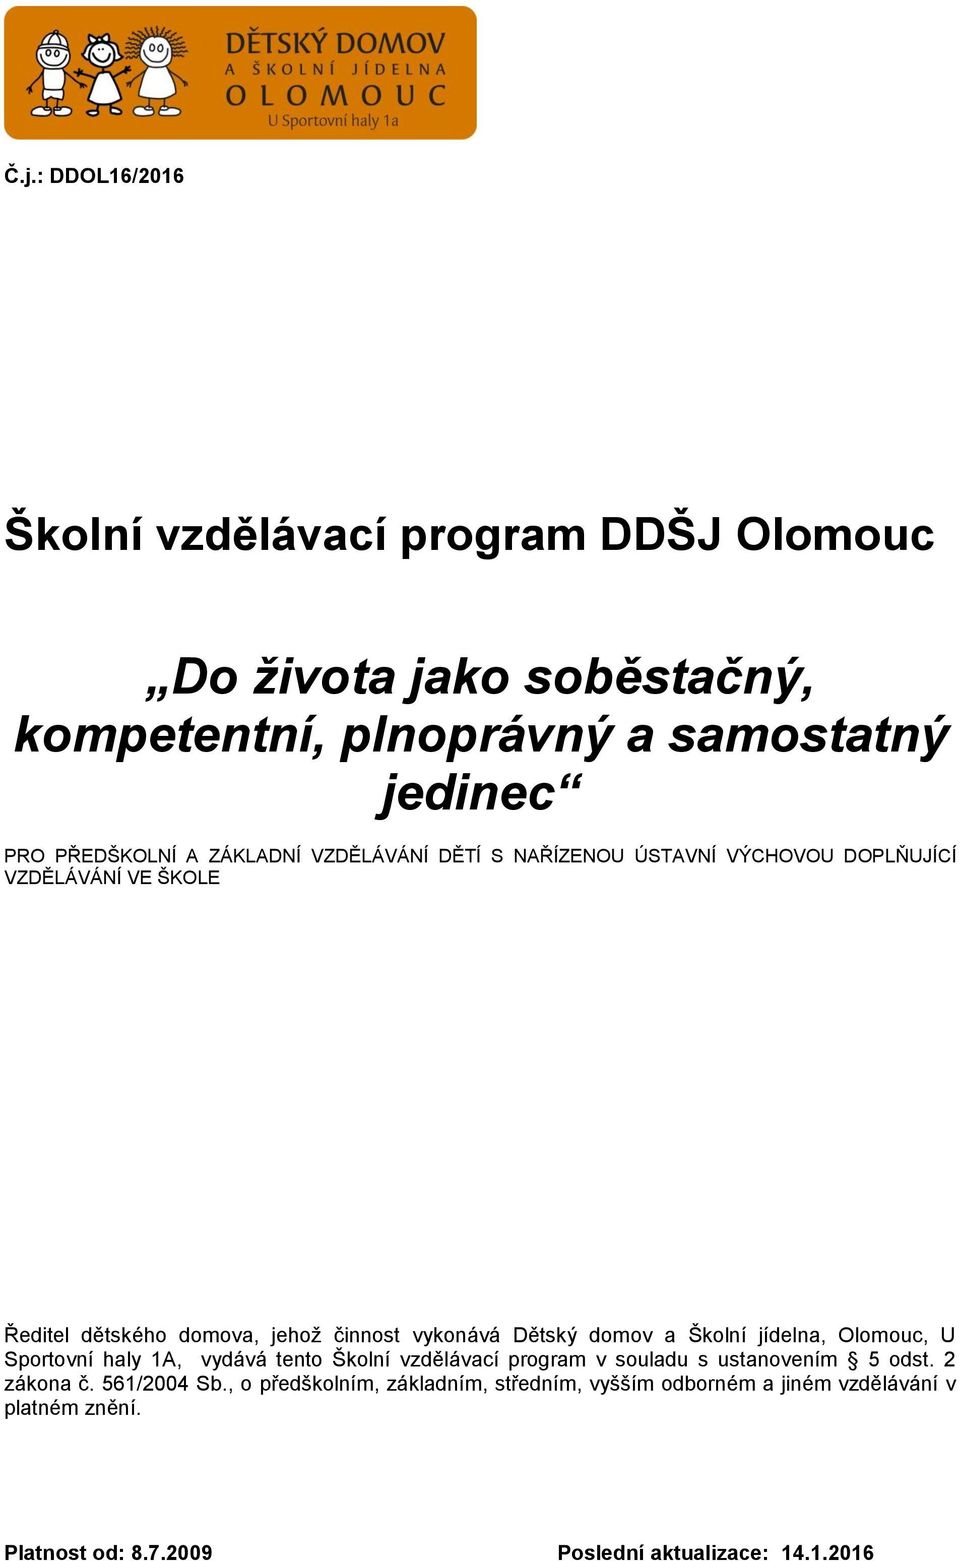 domov a Školní jídelna, Olomouc, U Sportovní haly 1A, vydává tento Školní vzdělávací program v souladu s ustanovením 5 odst. 2 zákona č.